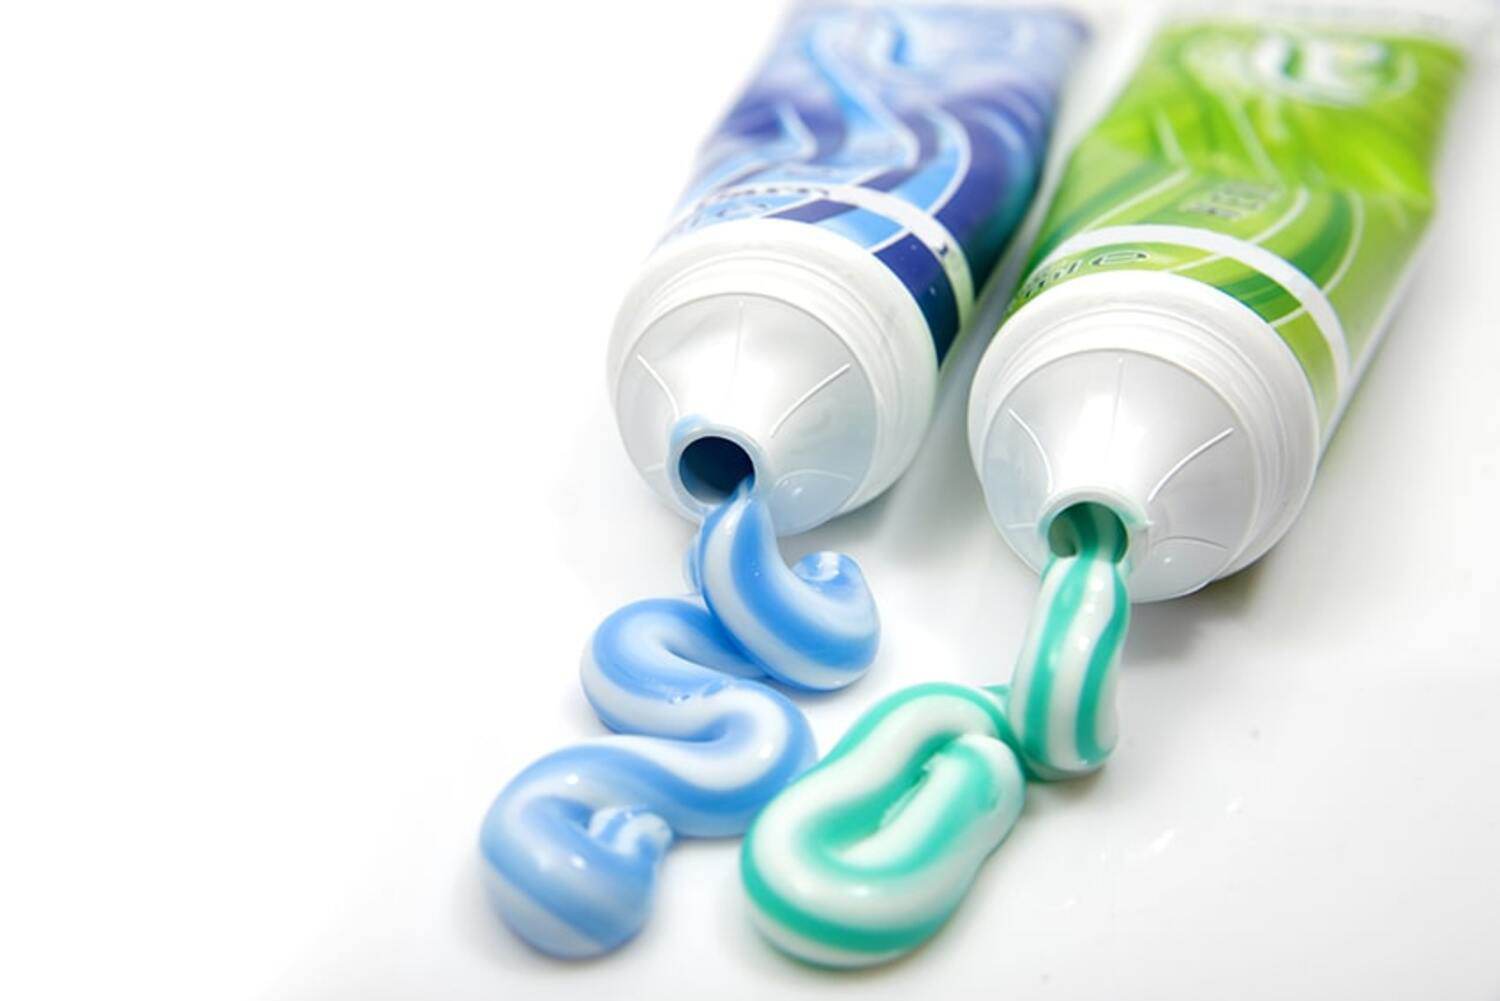 Trị mụn bằng kem đánh răng: bí quyết làm đẹp đơn giản, tiết kiệm và dễ dàng thực hiện - 3